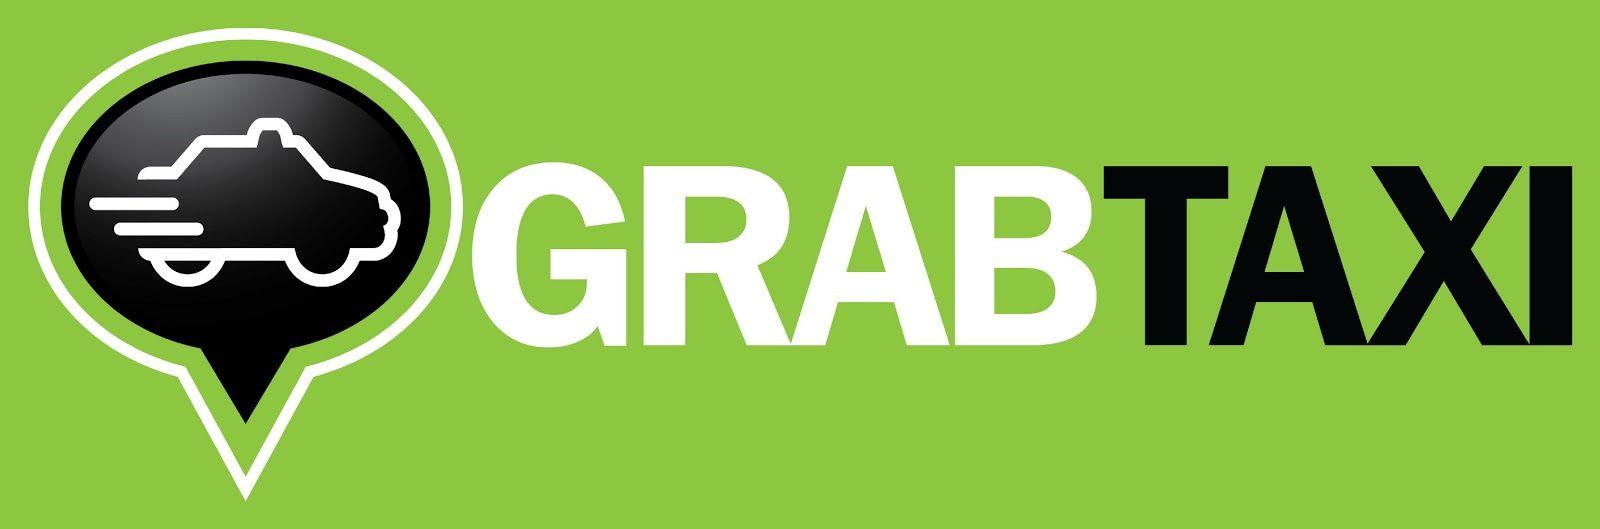 GrabTaxi Logo - GrabTaxi launches in CDO. TsadaGyud! de Oro's Lifestyle